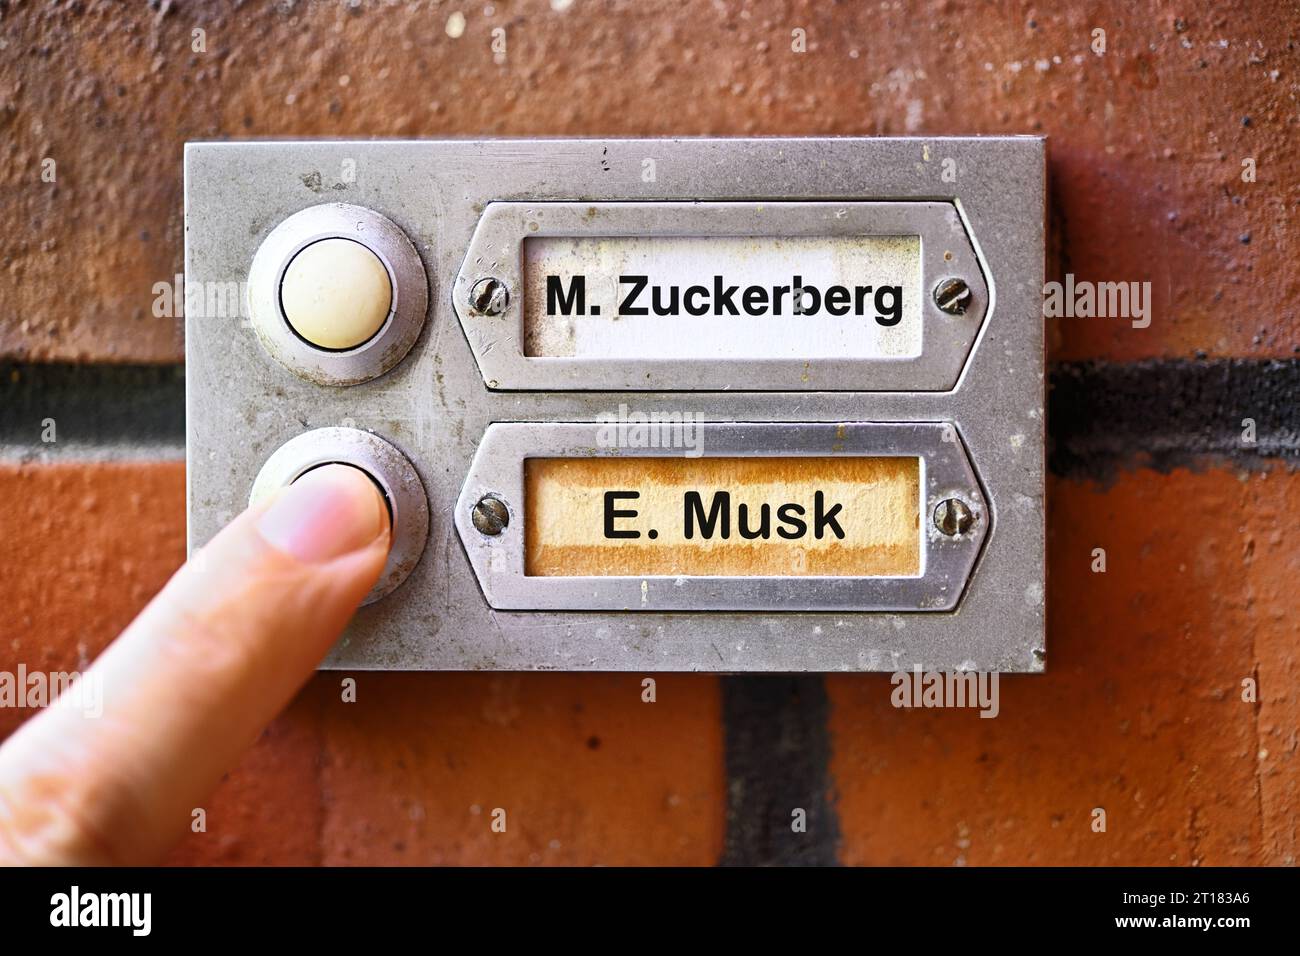 FOTOMONTAGE, Klingelknöpfe mit Namensschildern von Elon Musk und Mark Zuckerberg Stock Photo